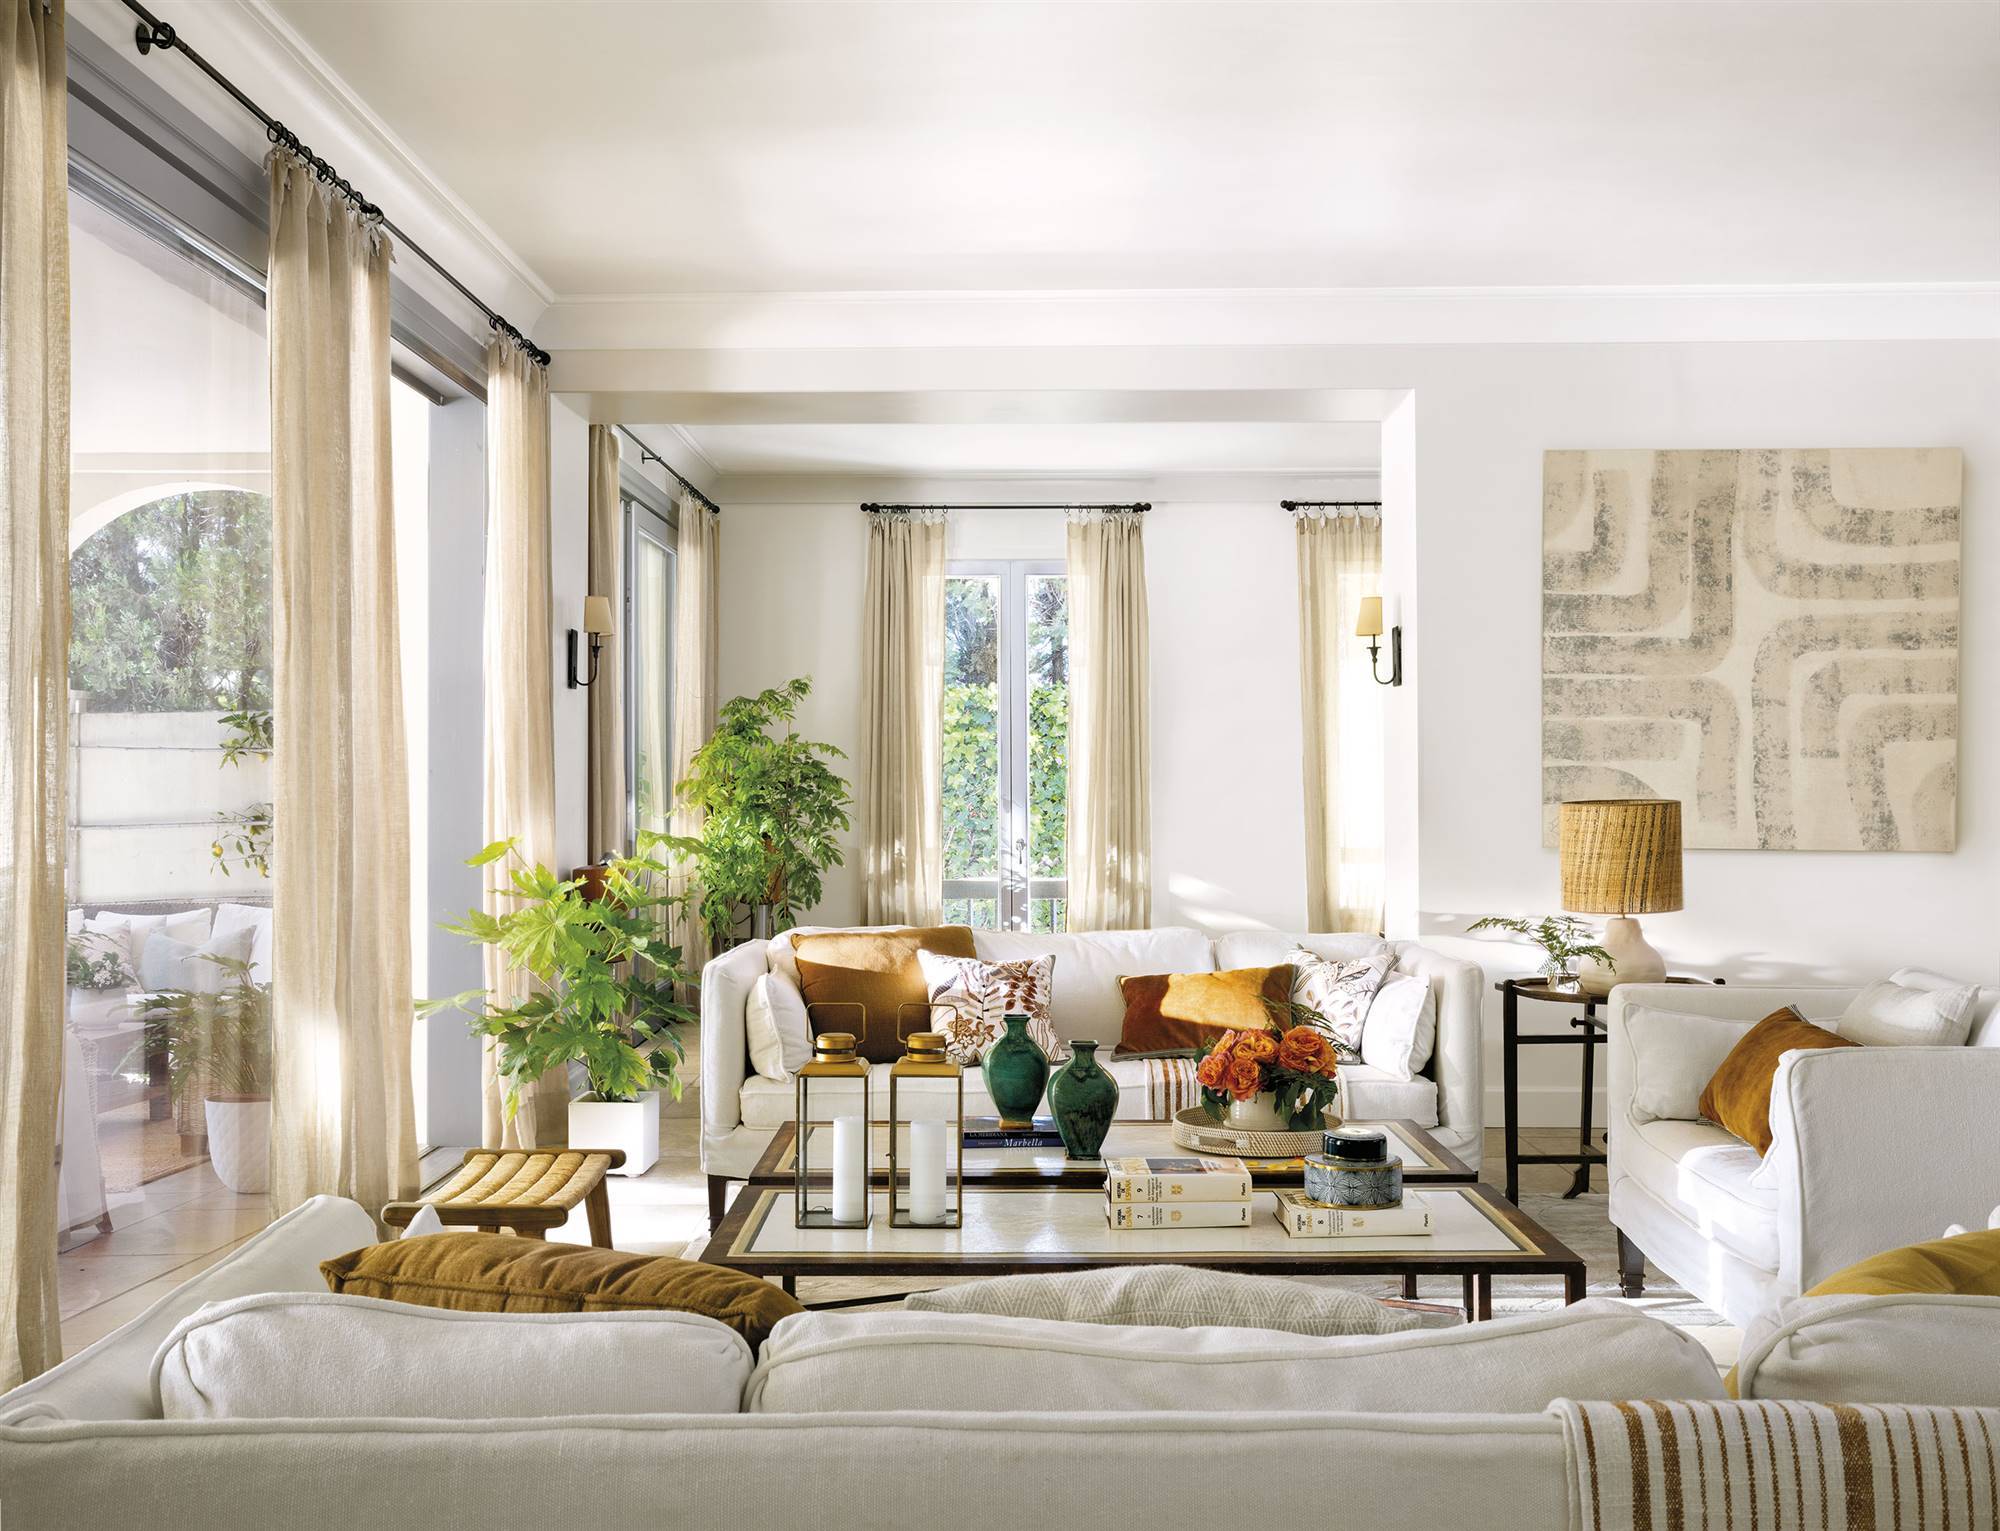 Salón clásico y atemporal en blanco con cojines mostaza y de terciopelo encima del sofá. 